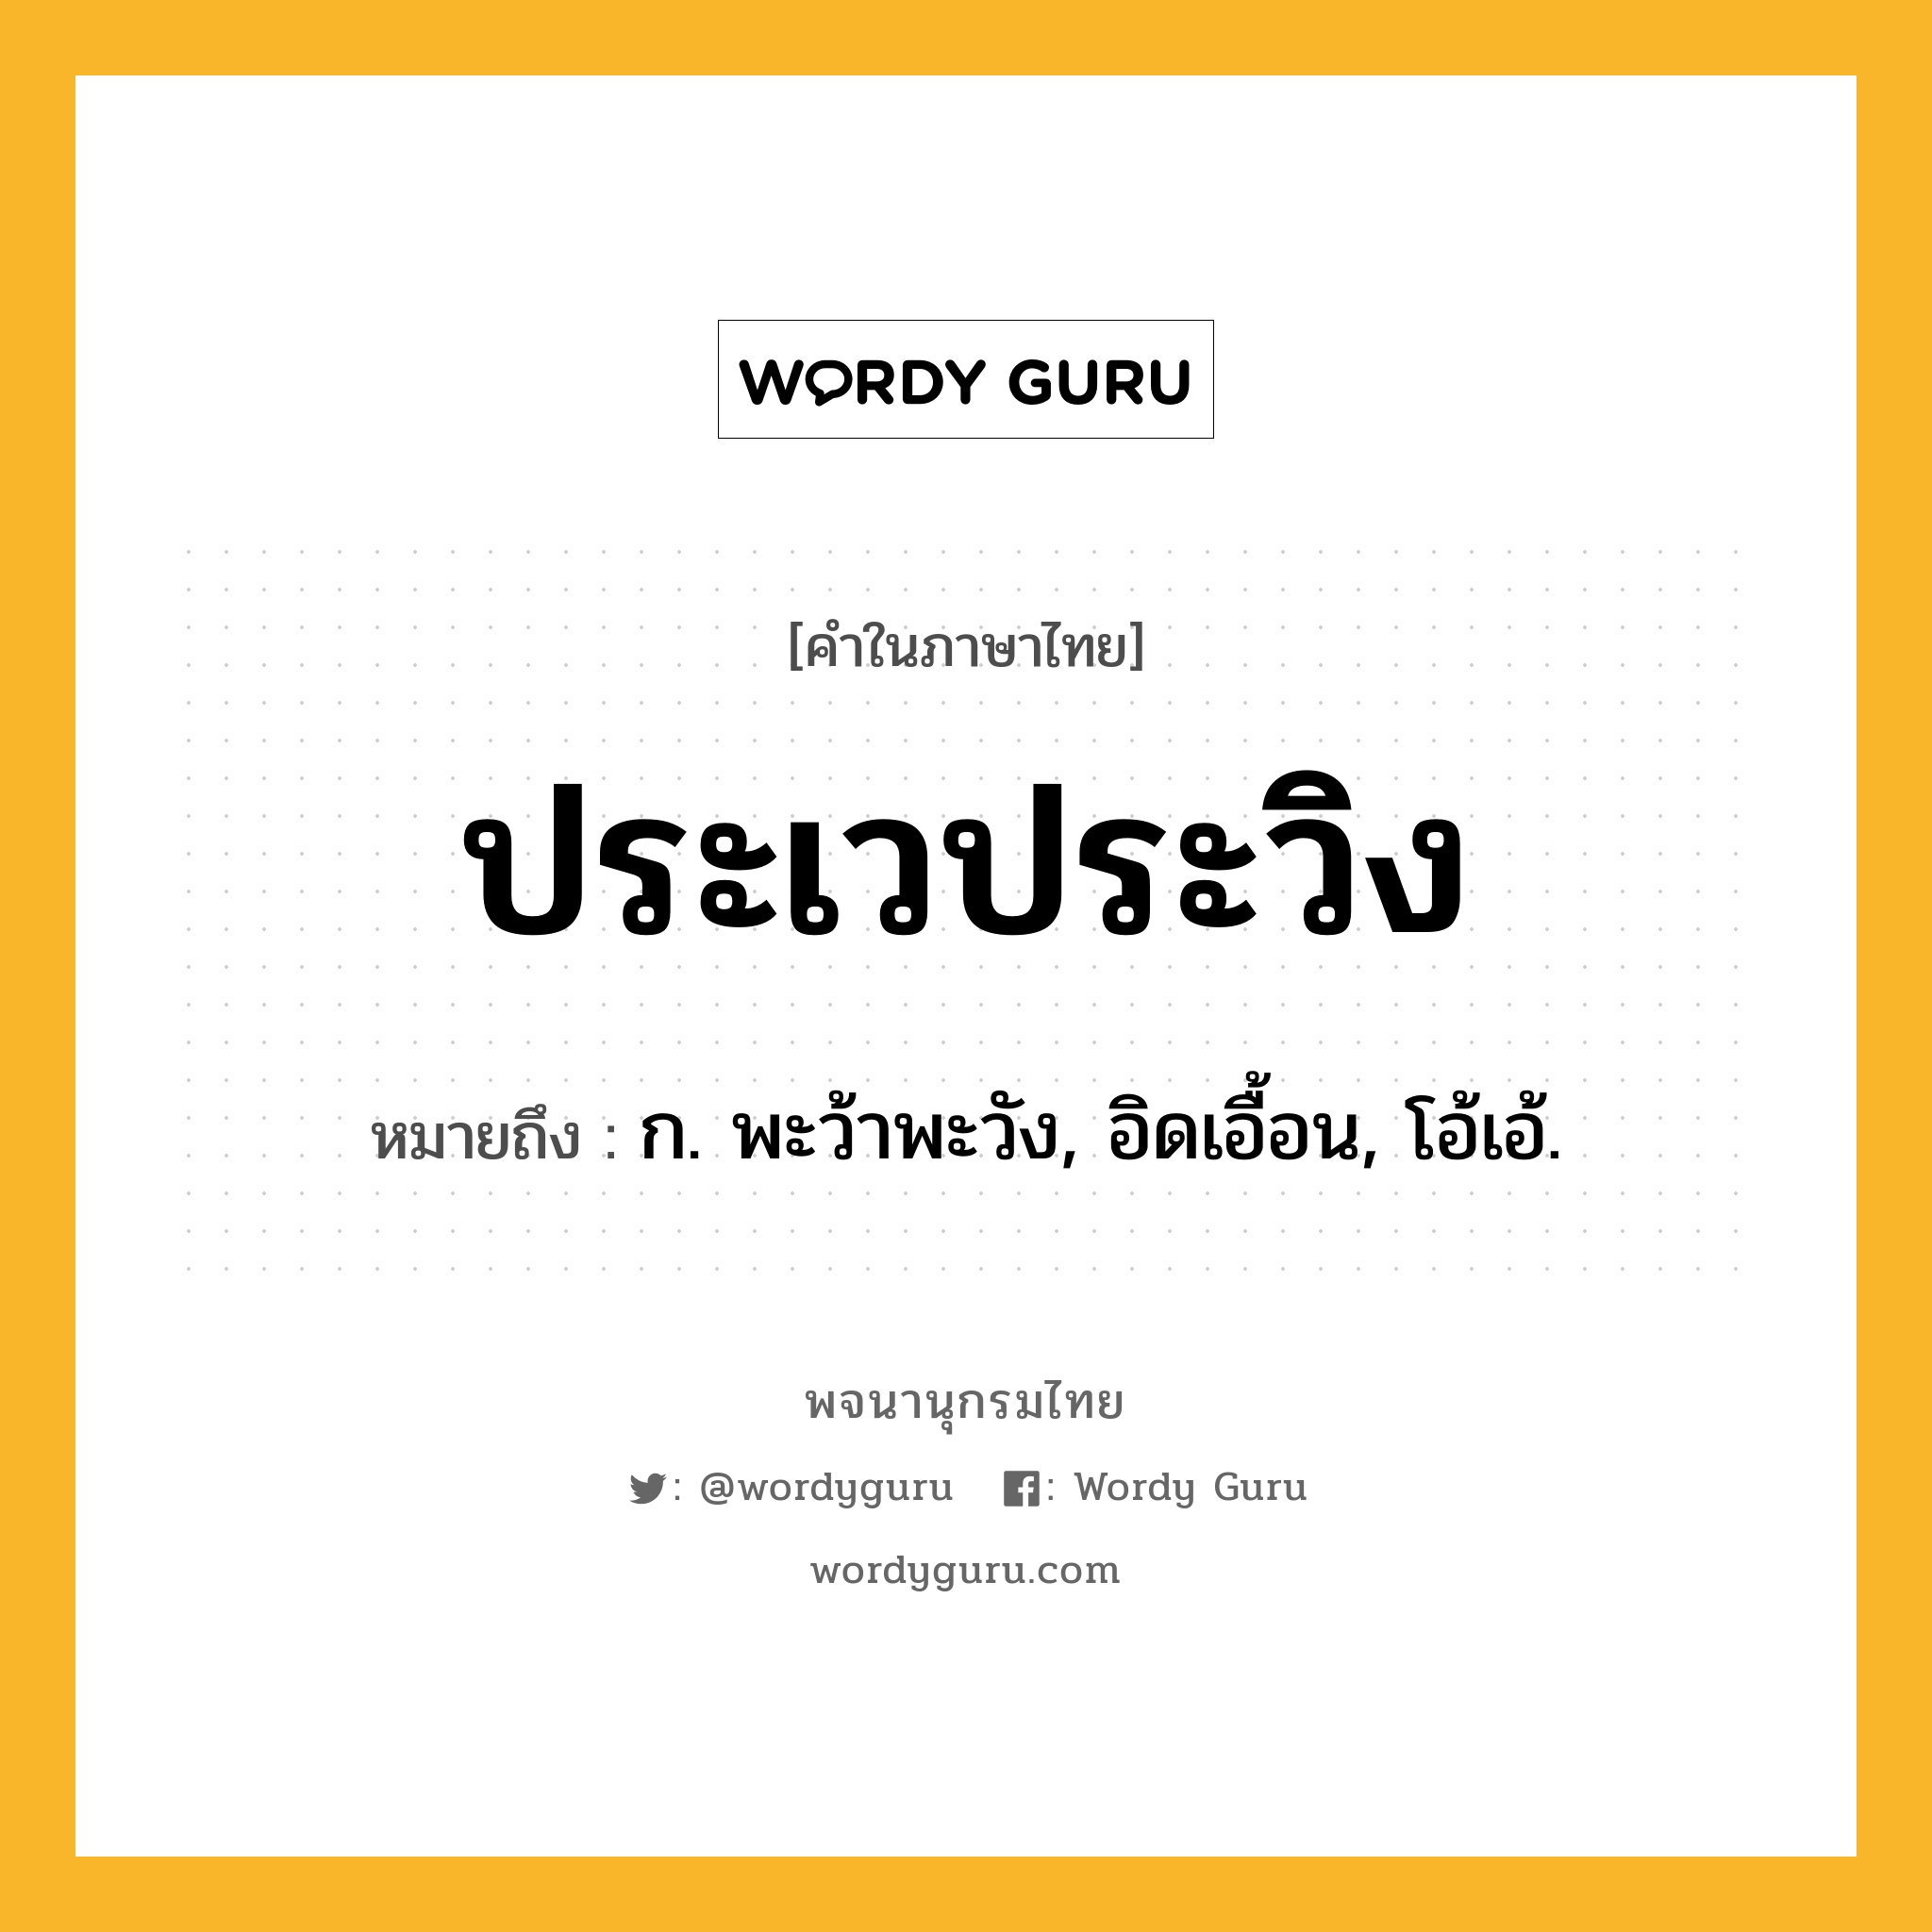 ประเวประวิง ความหมาย หมายถึงอะไร?, คำในภาษาไทย ประเวประวิง หมายถึง ก. พะว้าพะวัง, อิดเอื้อน, โอ้เอ้.